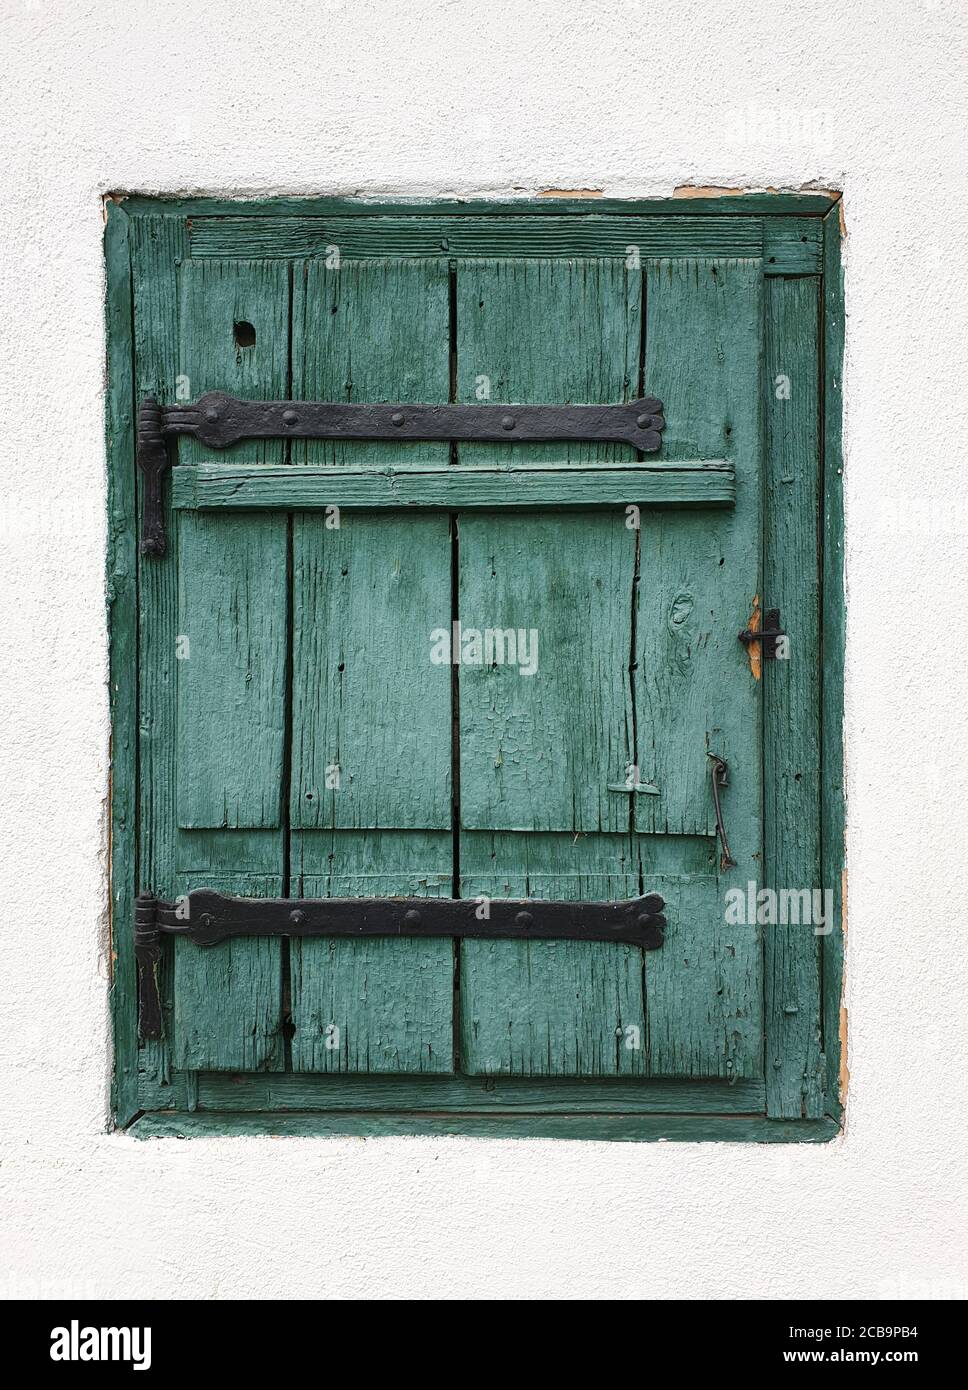 Closed wooden window shutters in Rimetea, Romania. Architecture detail of house window in the village of Rimetea, Torocko, Alba county, Romania Stock Photo